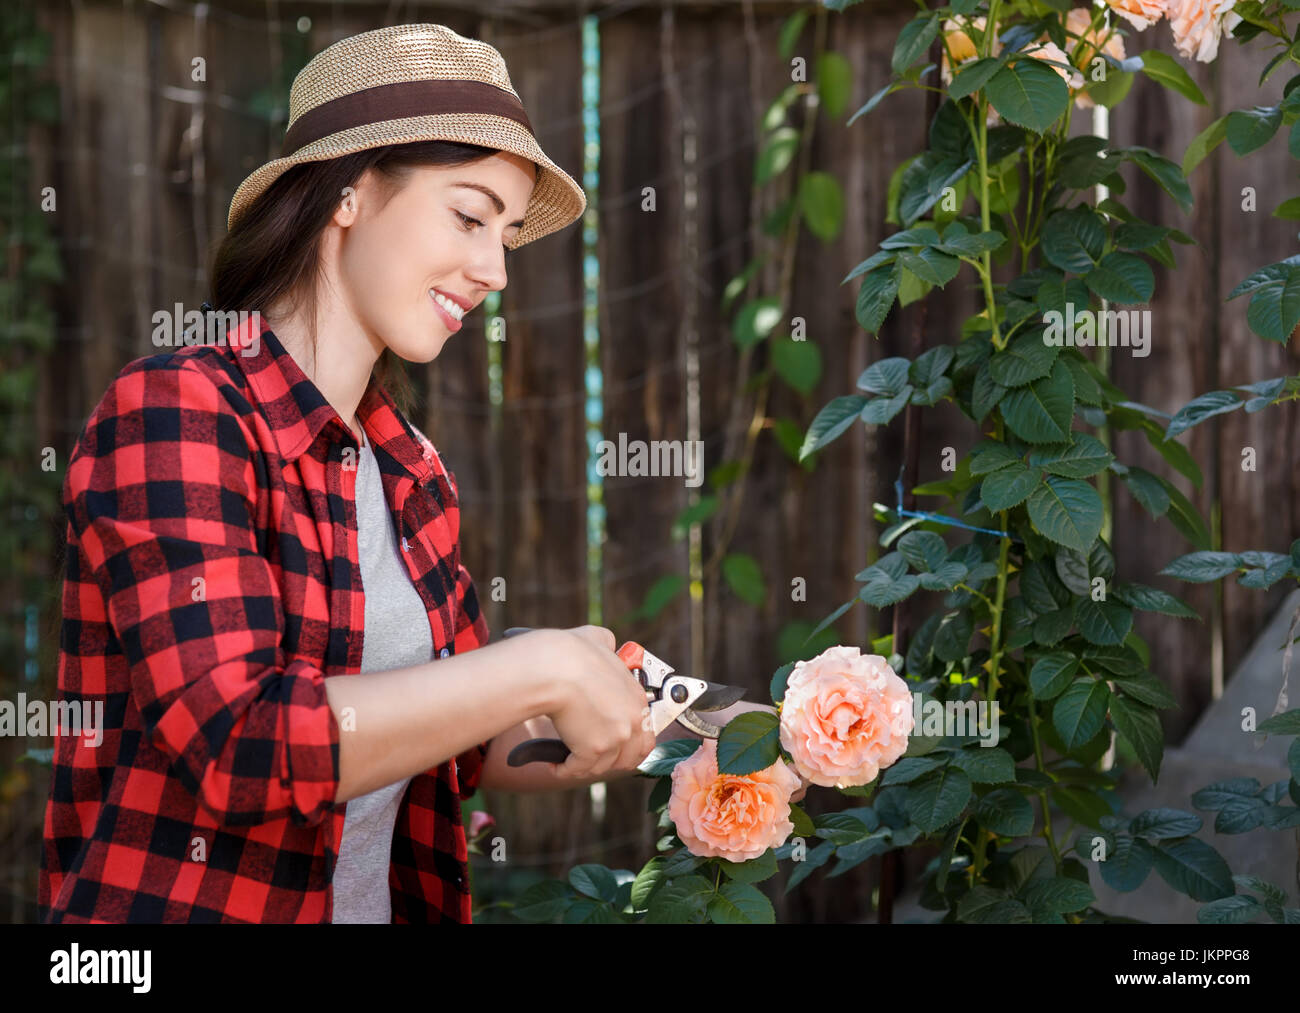 gardener girl trimming flowers Stock Photo